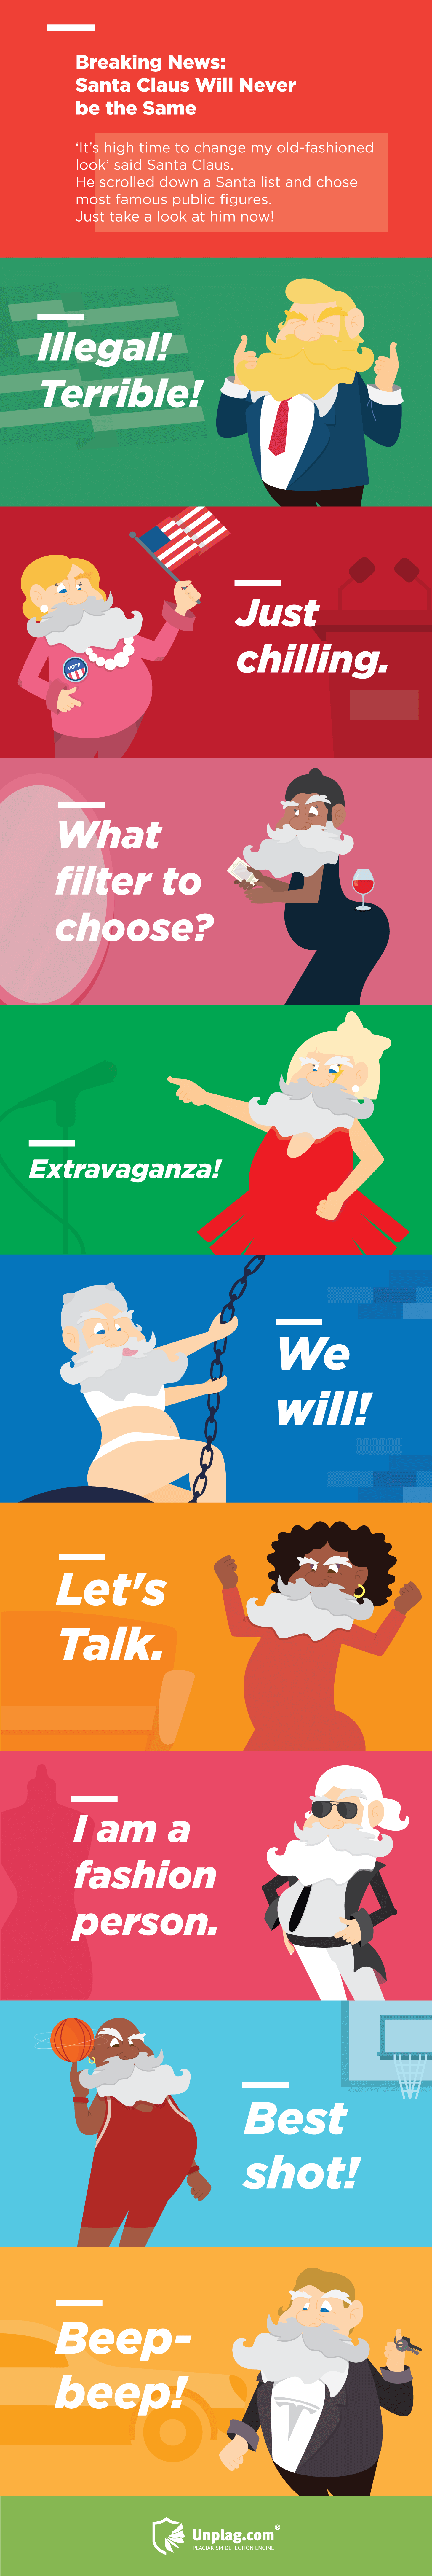 Christmas-News-Santa